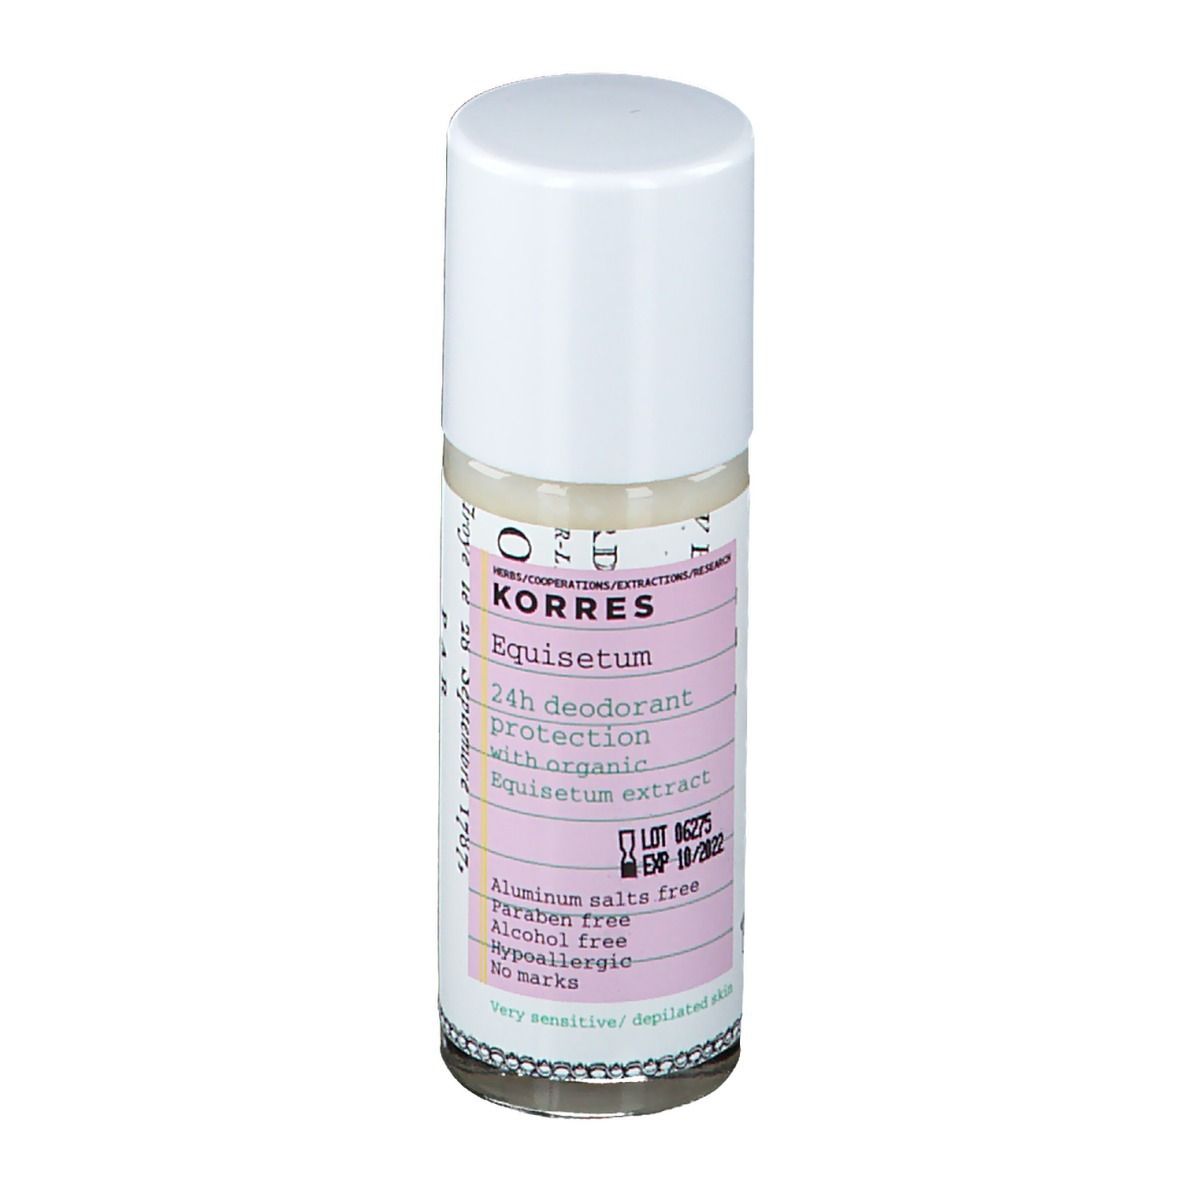 Korres® Equisetum Deodorant 24h